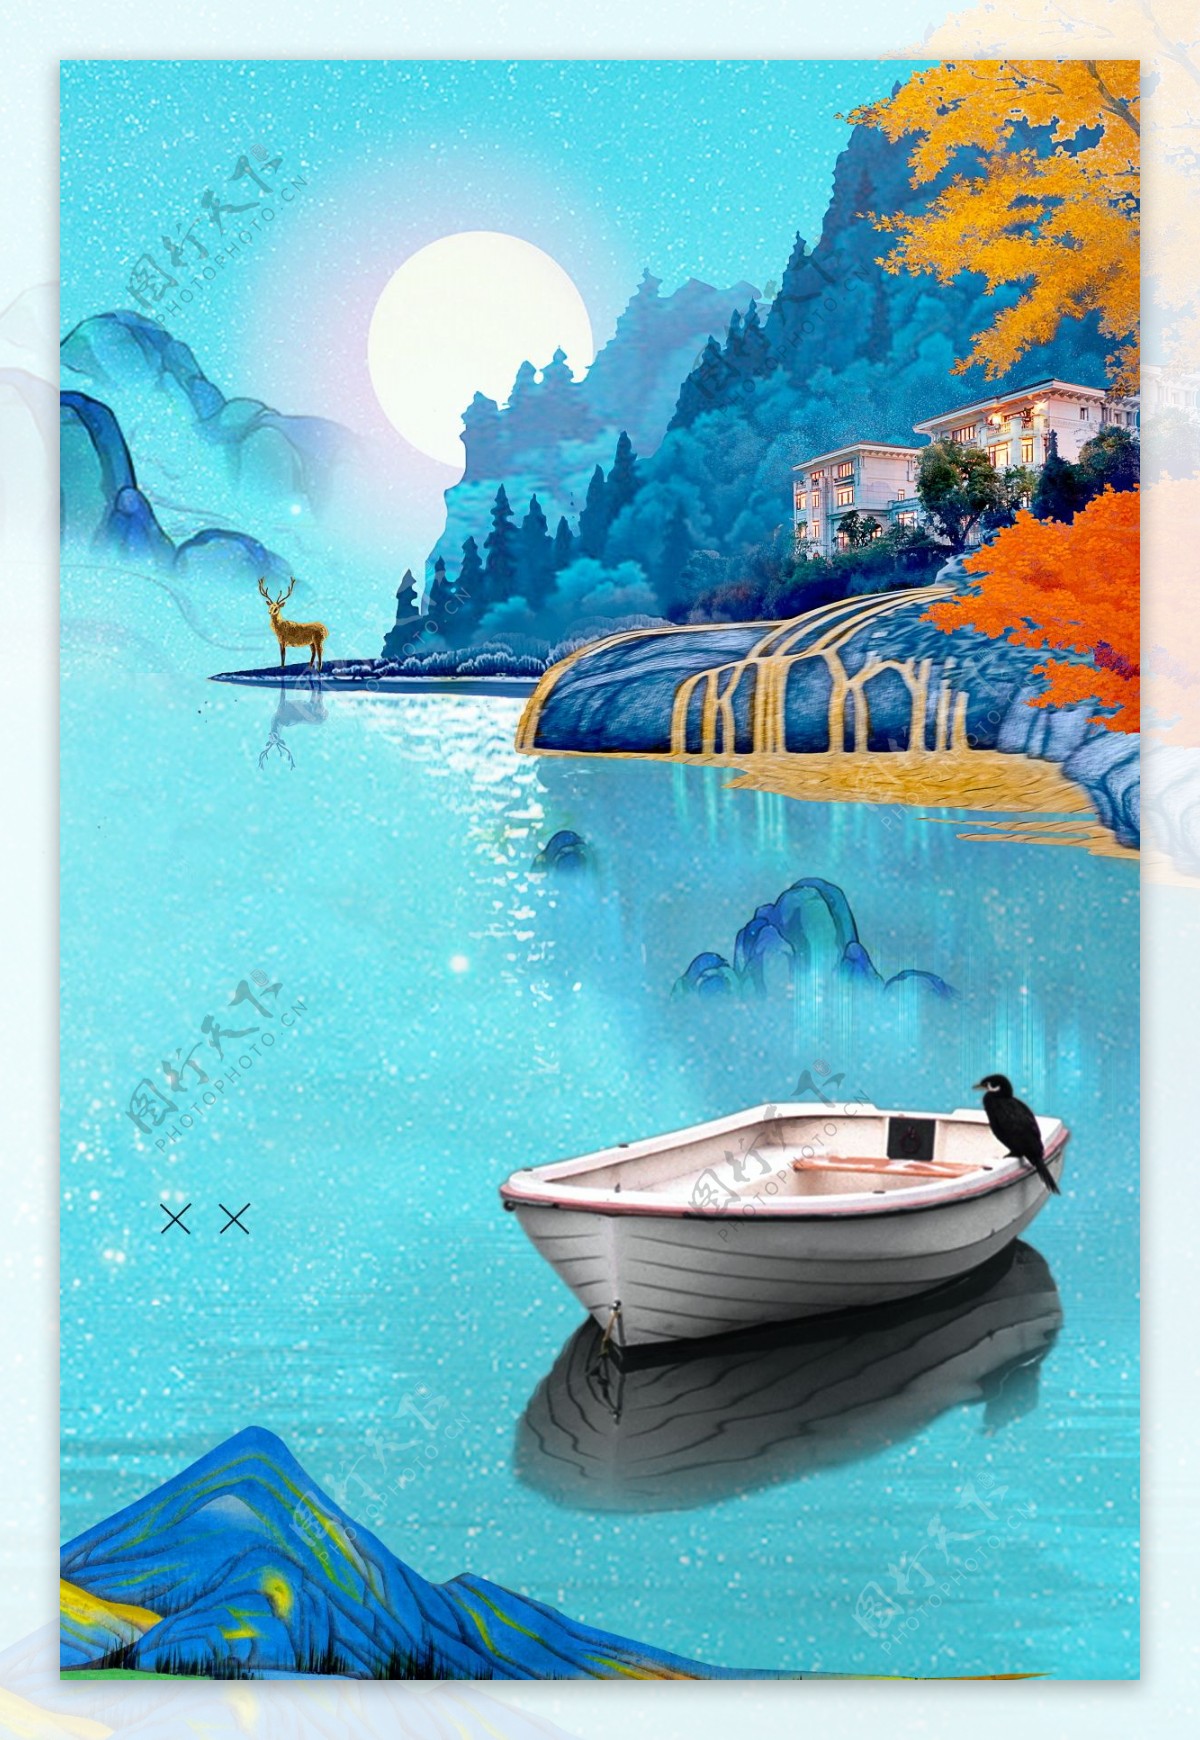 蓝色寒露节气湖面远山船只海报背景素材